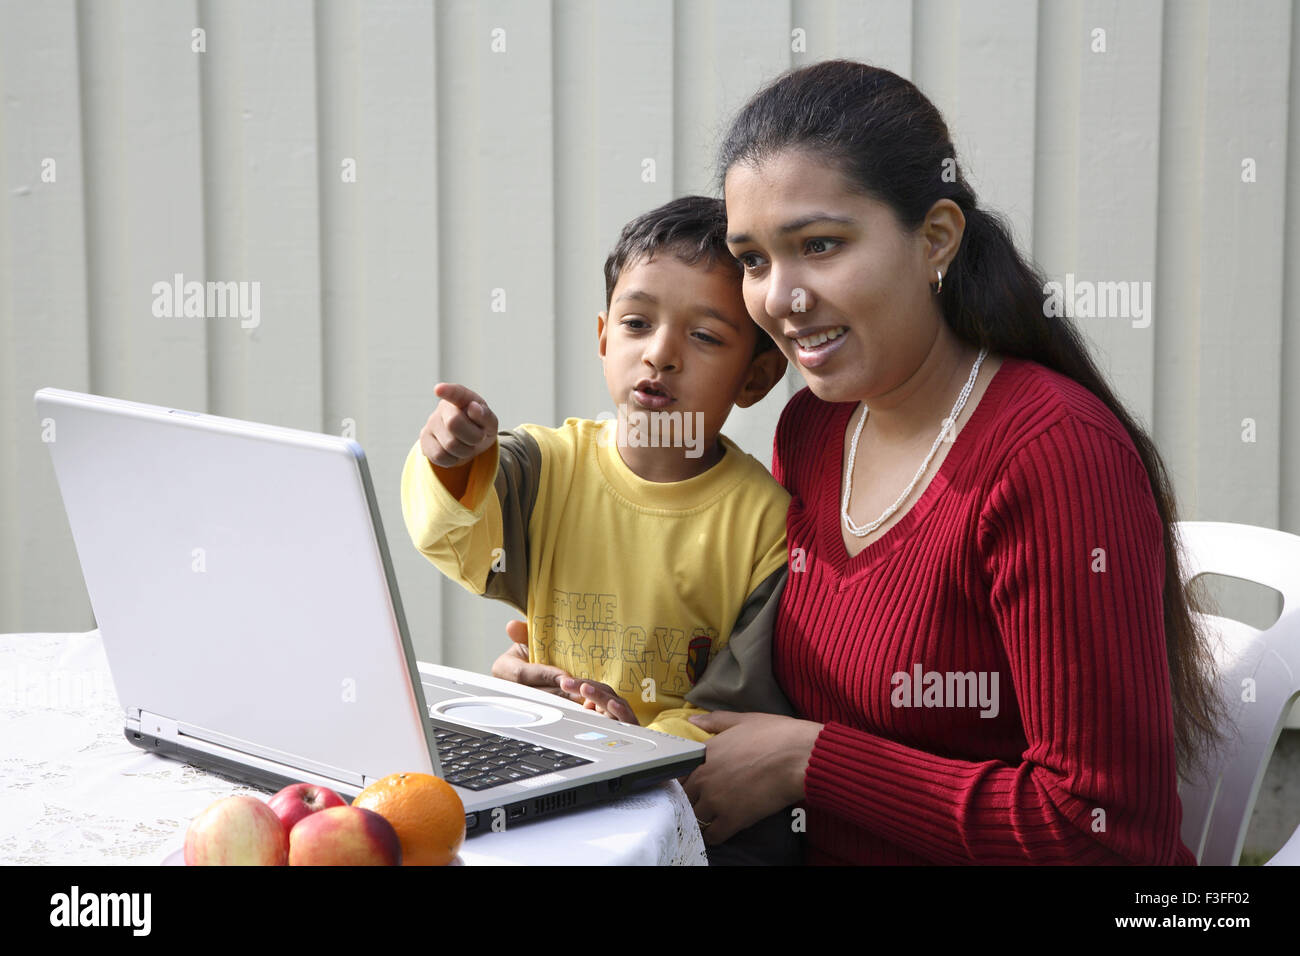 Chico apuntando con el dedo índice con la madre mirando a la pantalla del portátil se tocan los jefes MR#468 Foto de stock